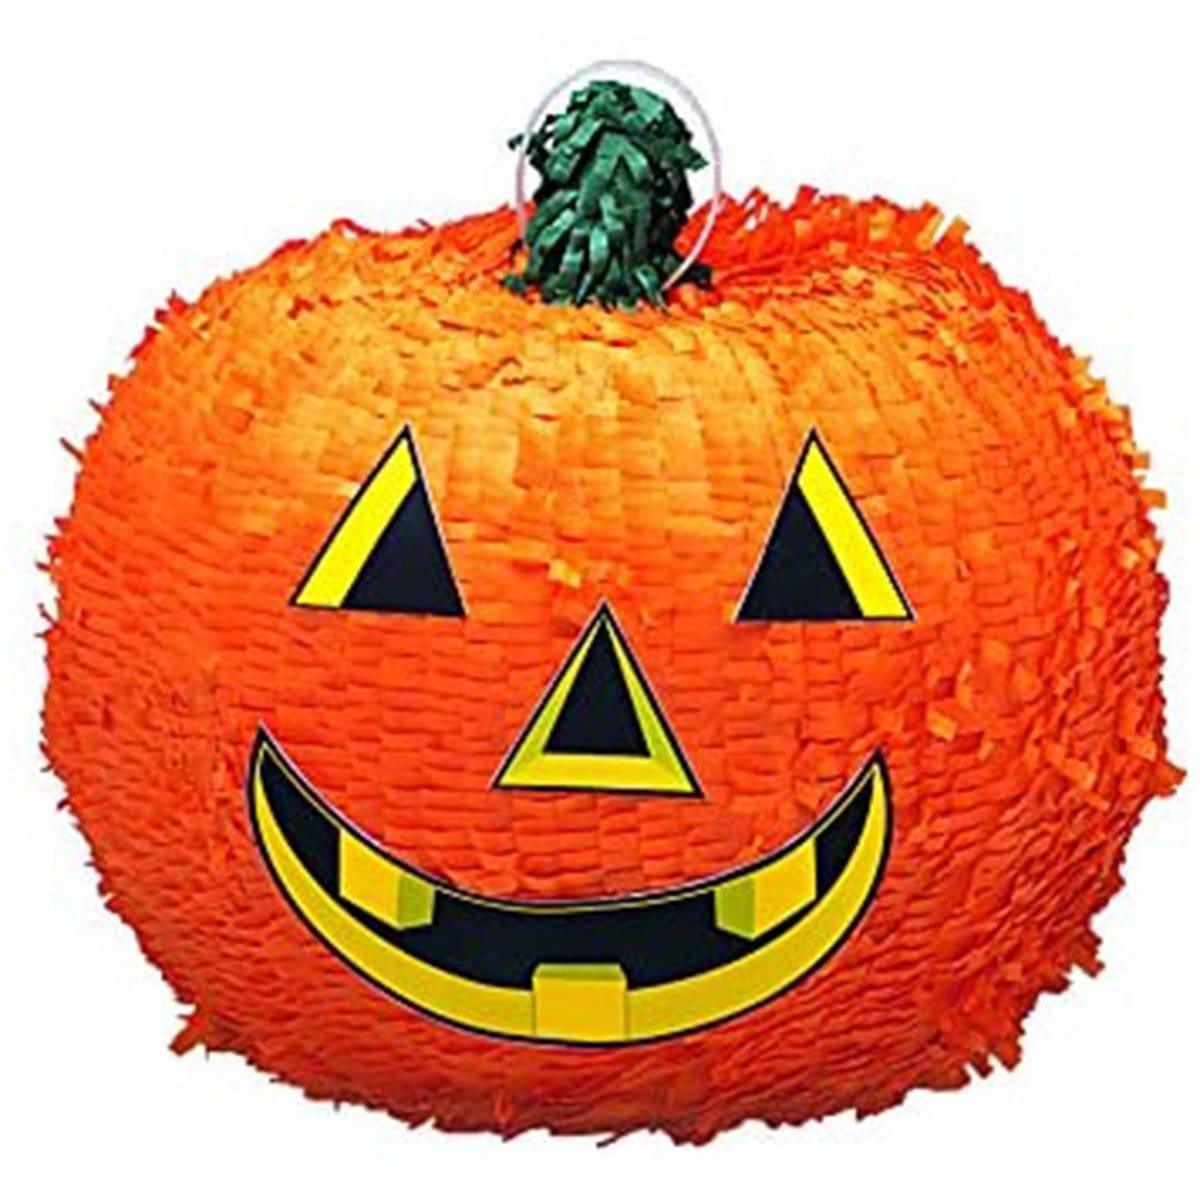 Buy Halloween Pumpkin Pinata sold at Party Expert